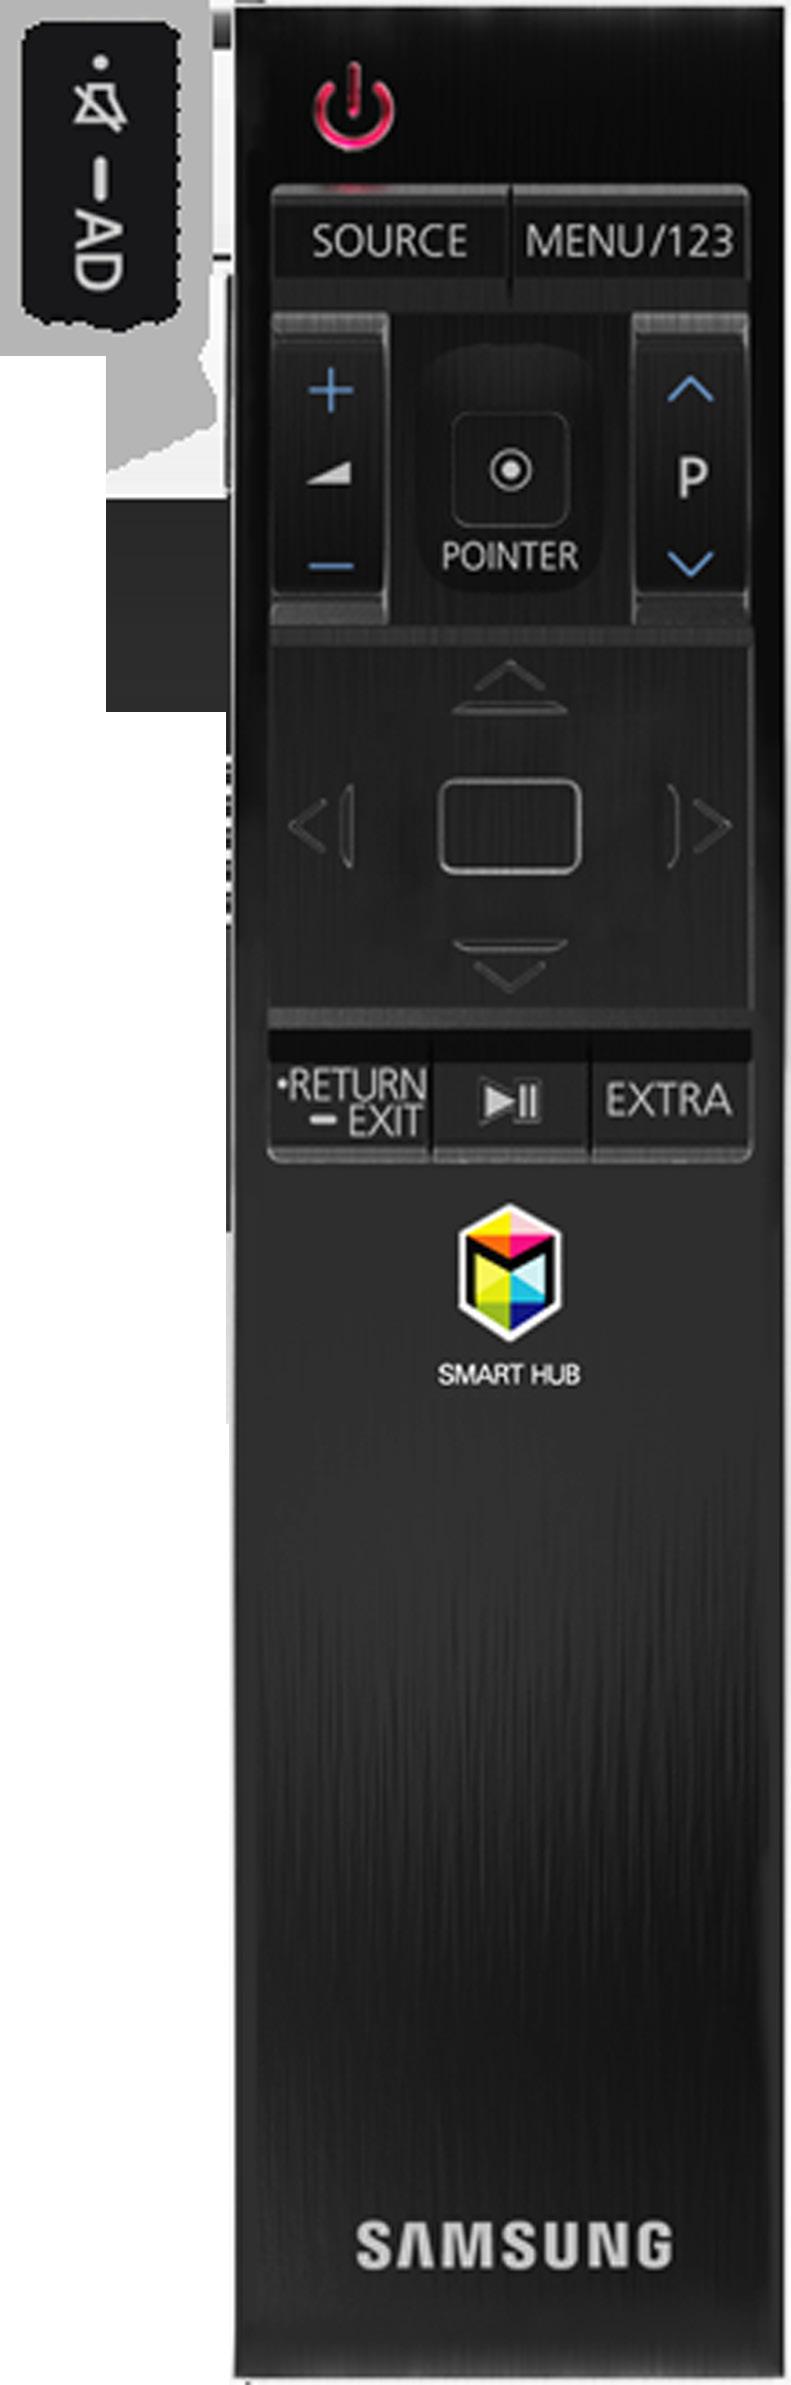 About the Samsung Smart Control Button Description / Press